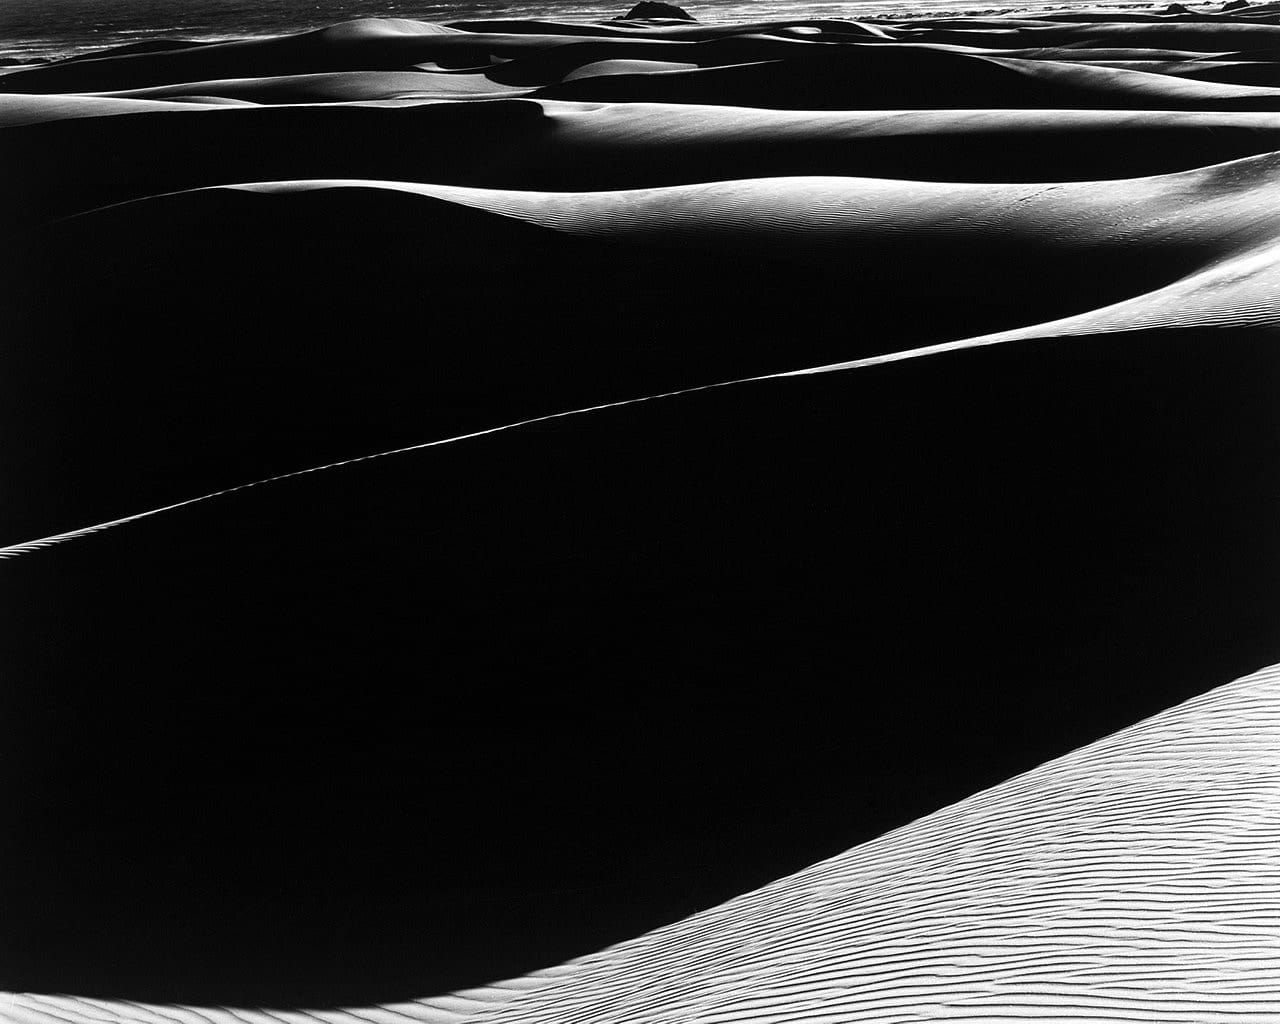 Edward Weston, Dunes, Oceano S-37, 1936